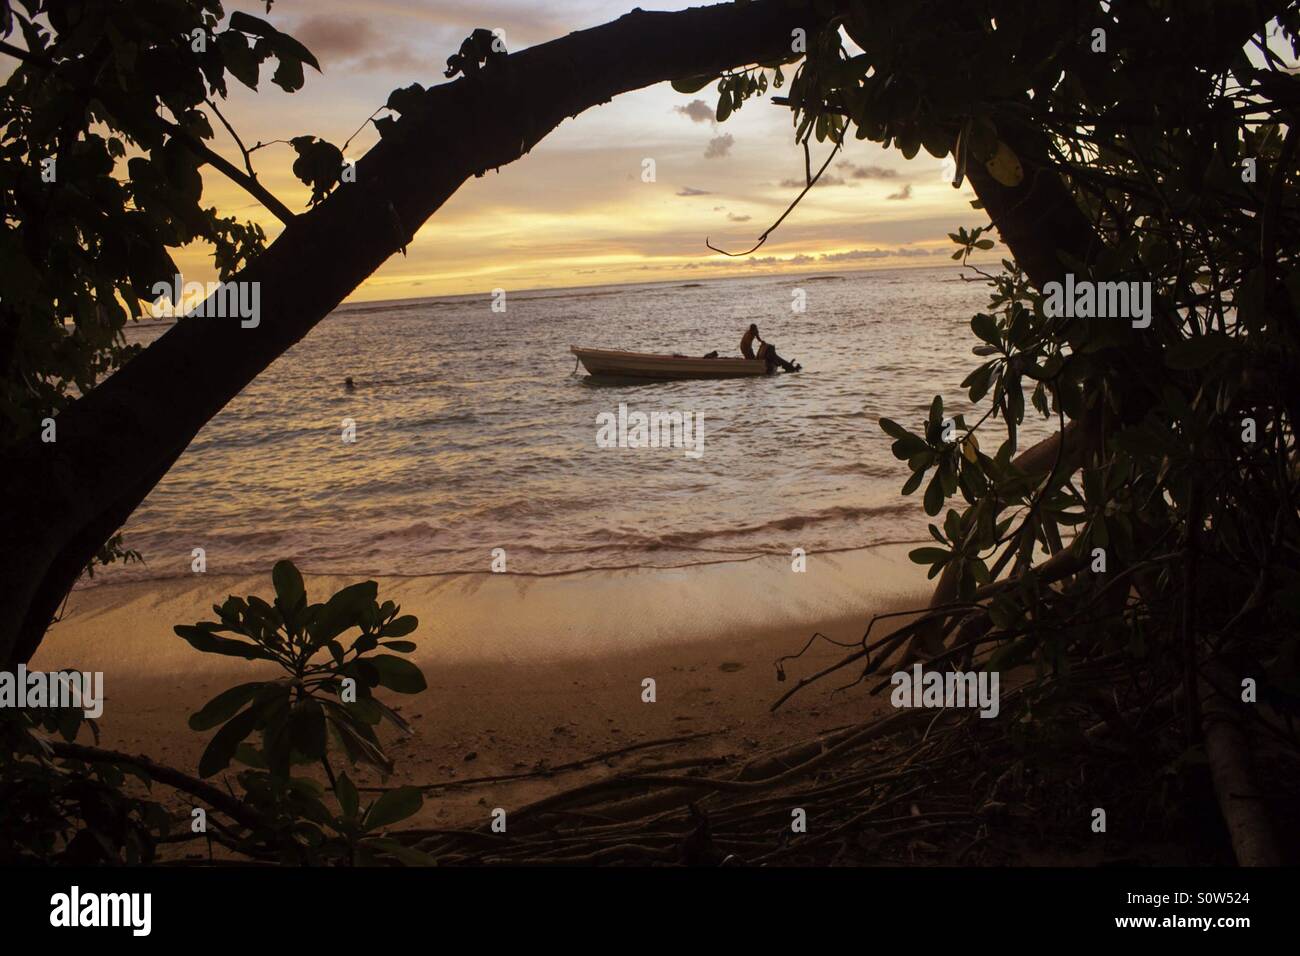 Sunset at empty island on West Sumatra sea. Stock Photo